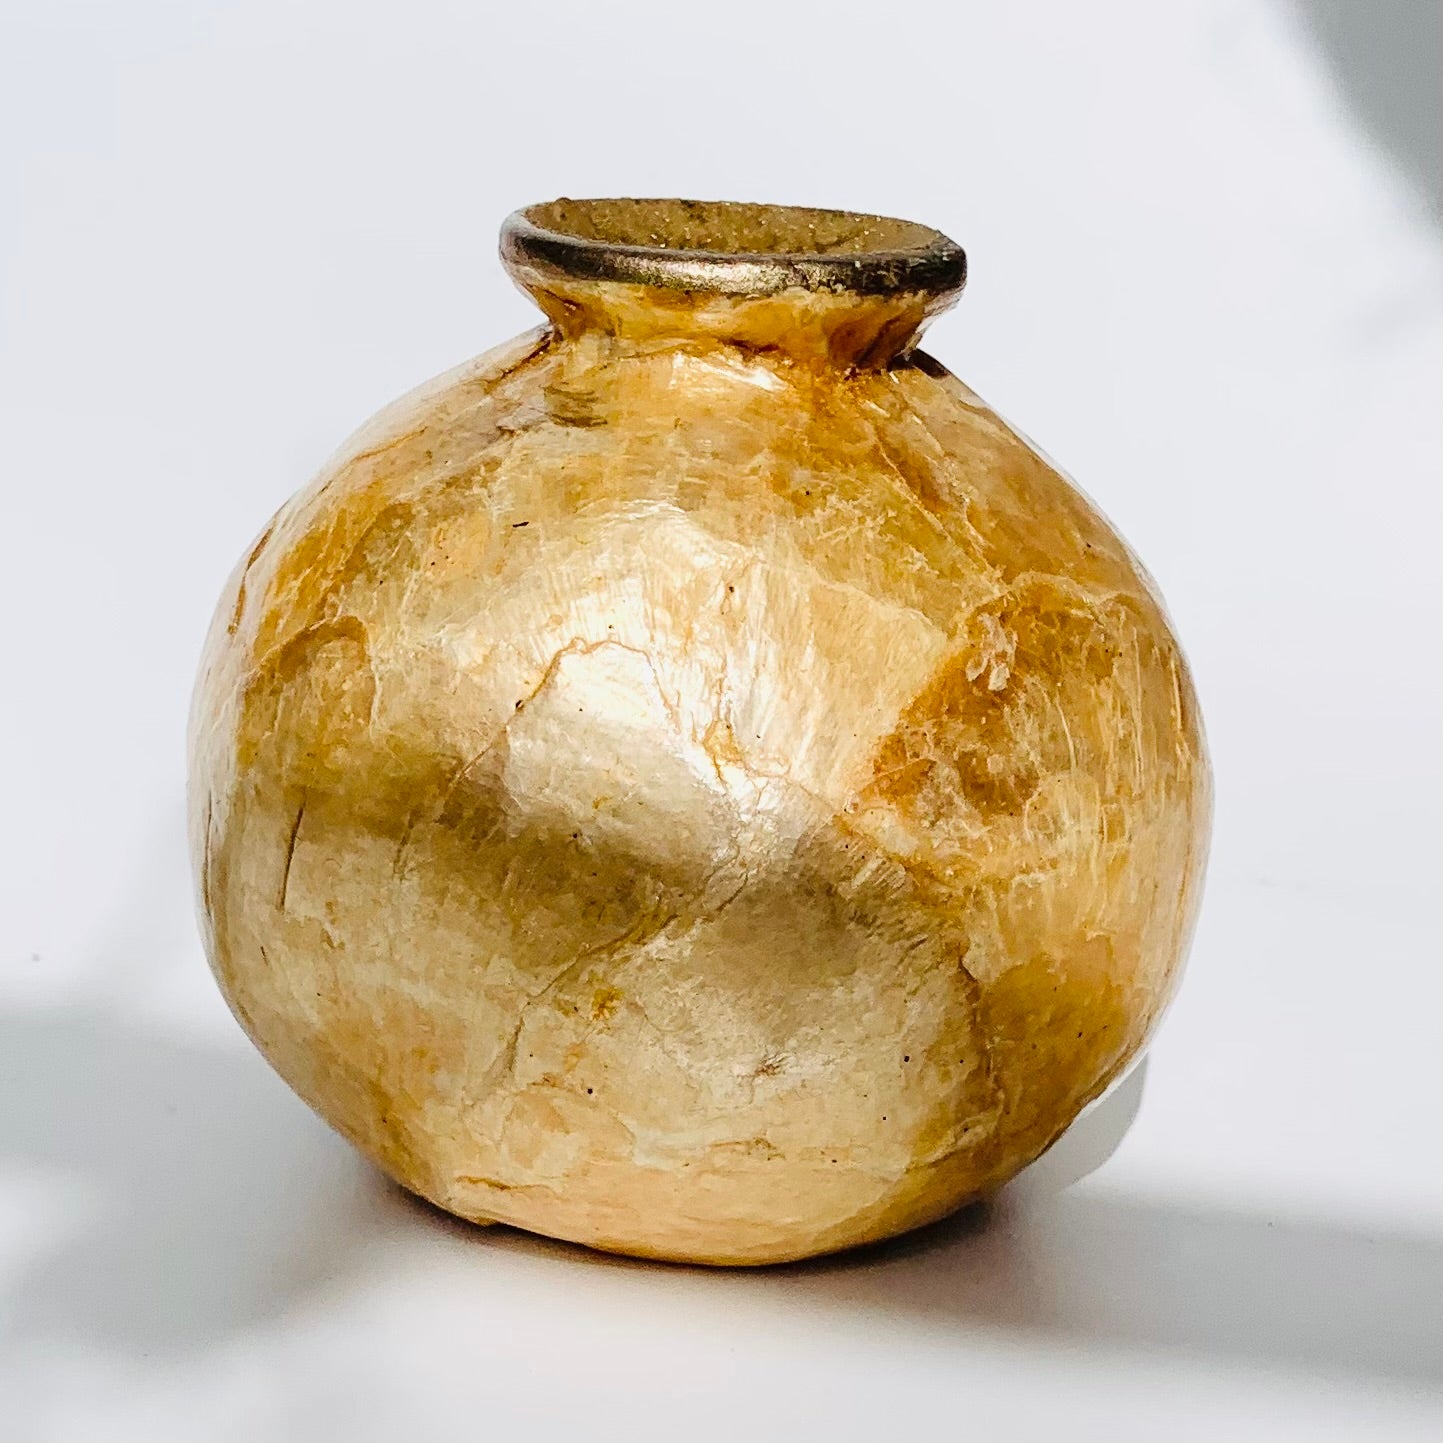 Capiz and Ceramic Bud Vase